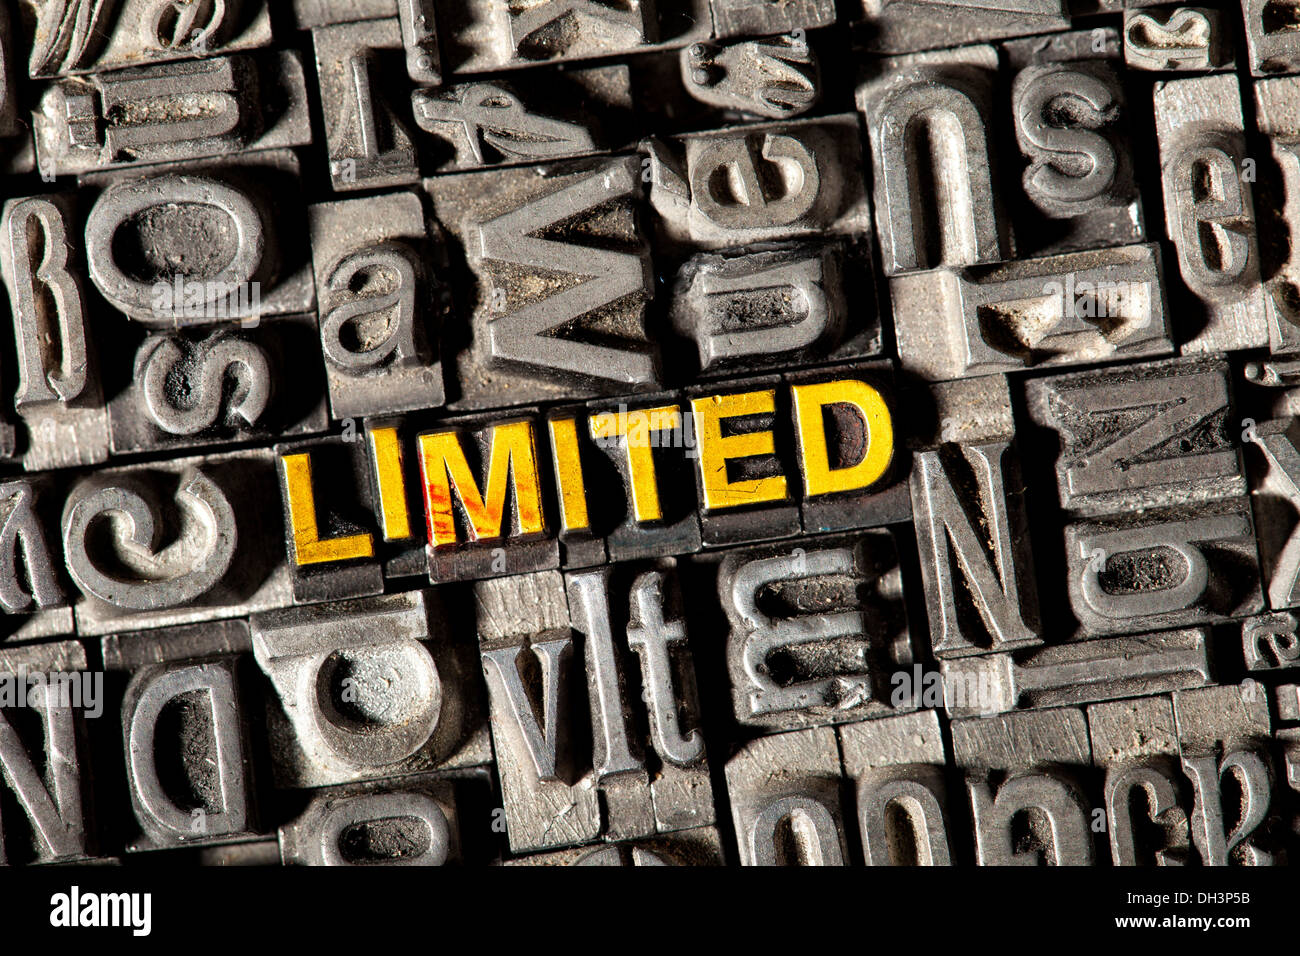 Cable viejo letras que forman la palabra "limitada" Foto de stock